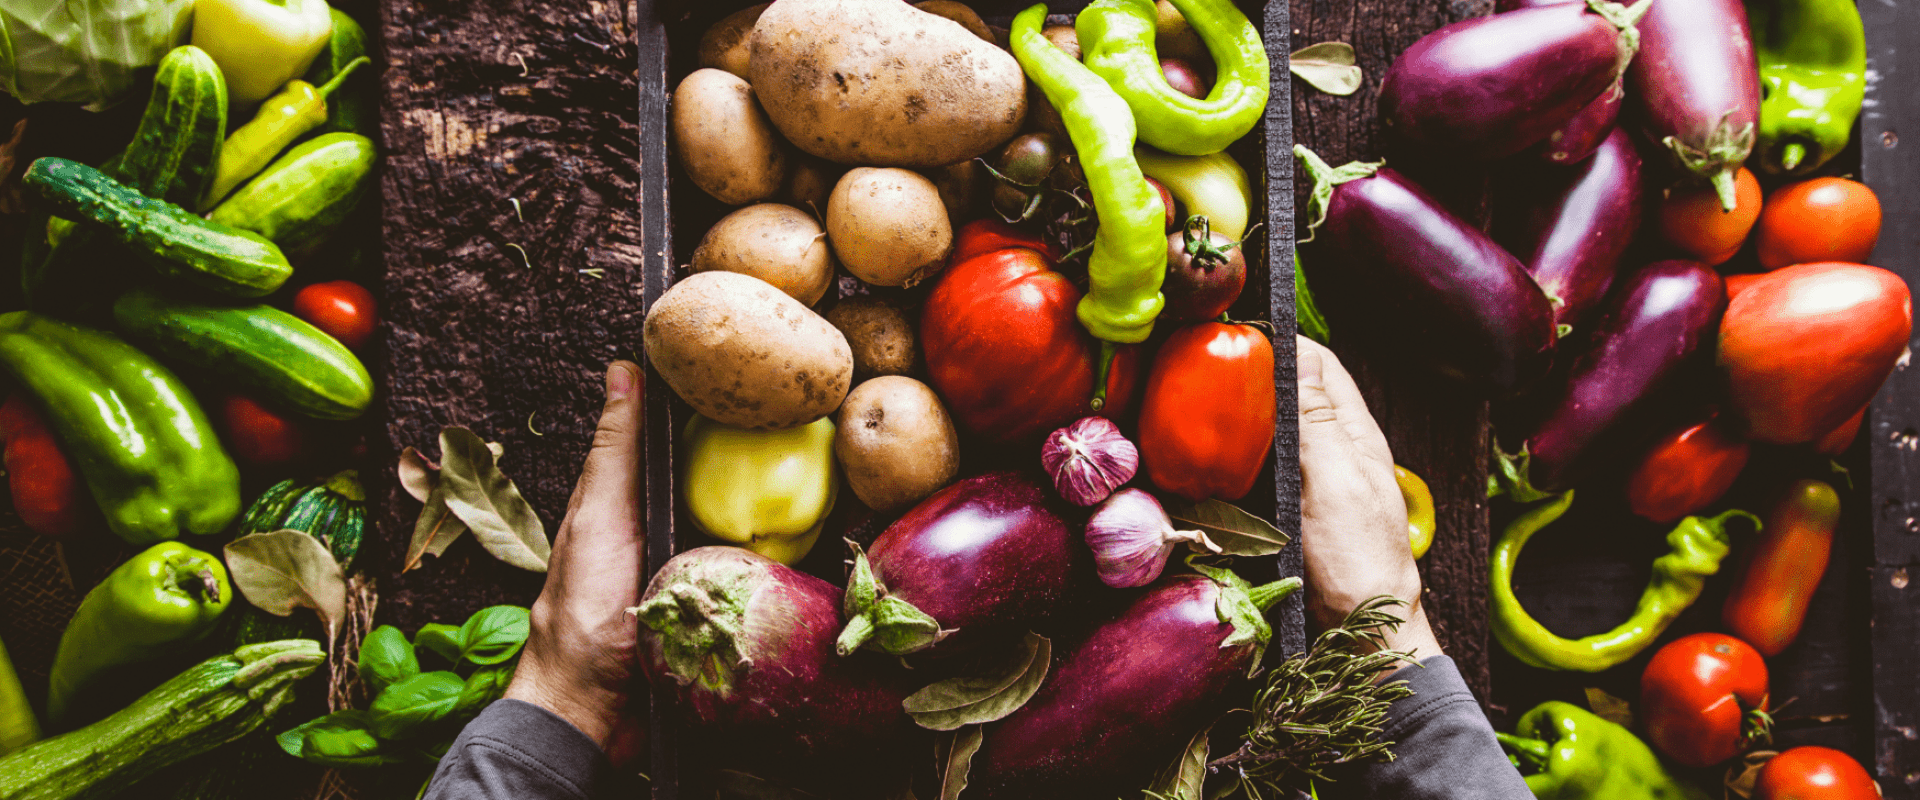 Les fruits et légumes frais sont-ils vraiment plus sains que les surgelés ?